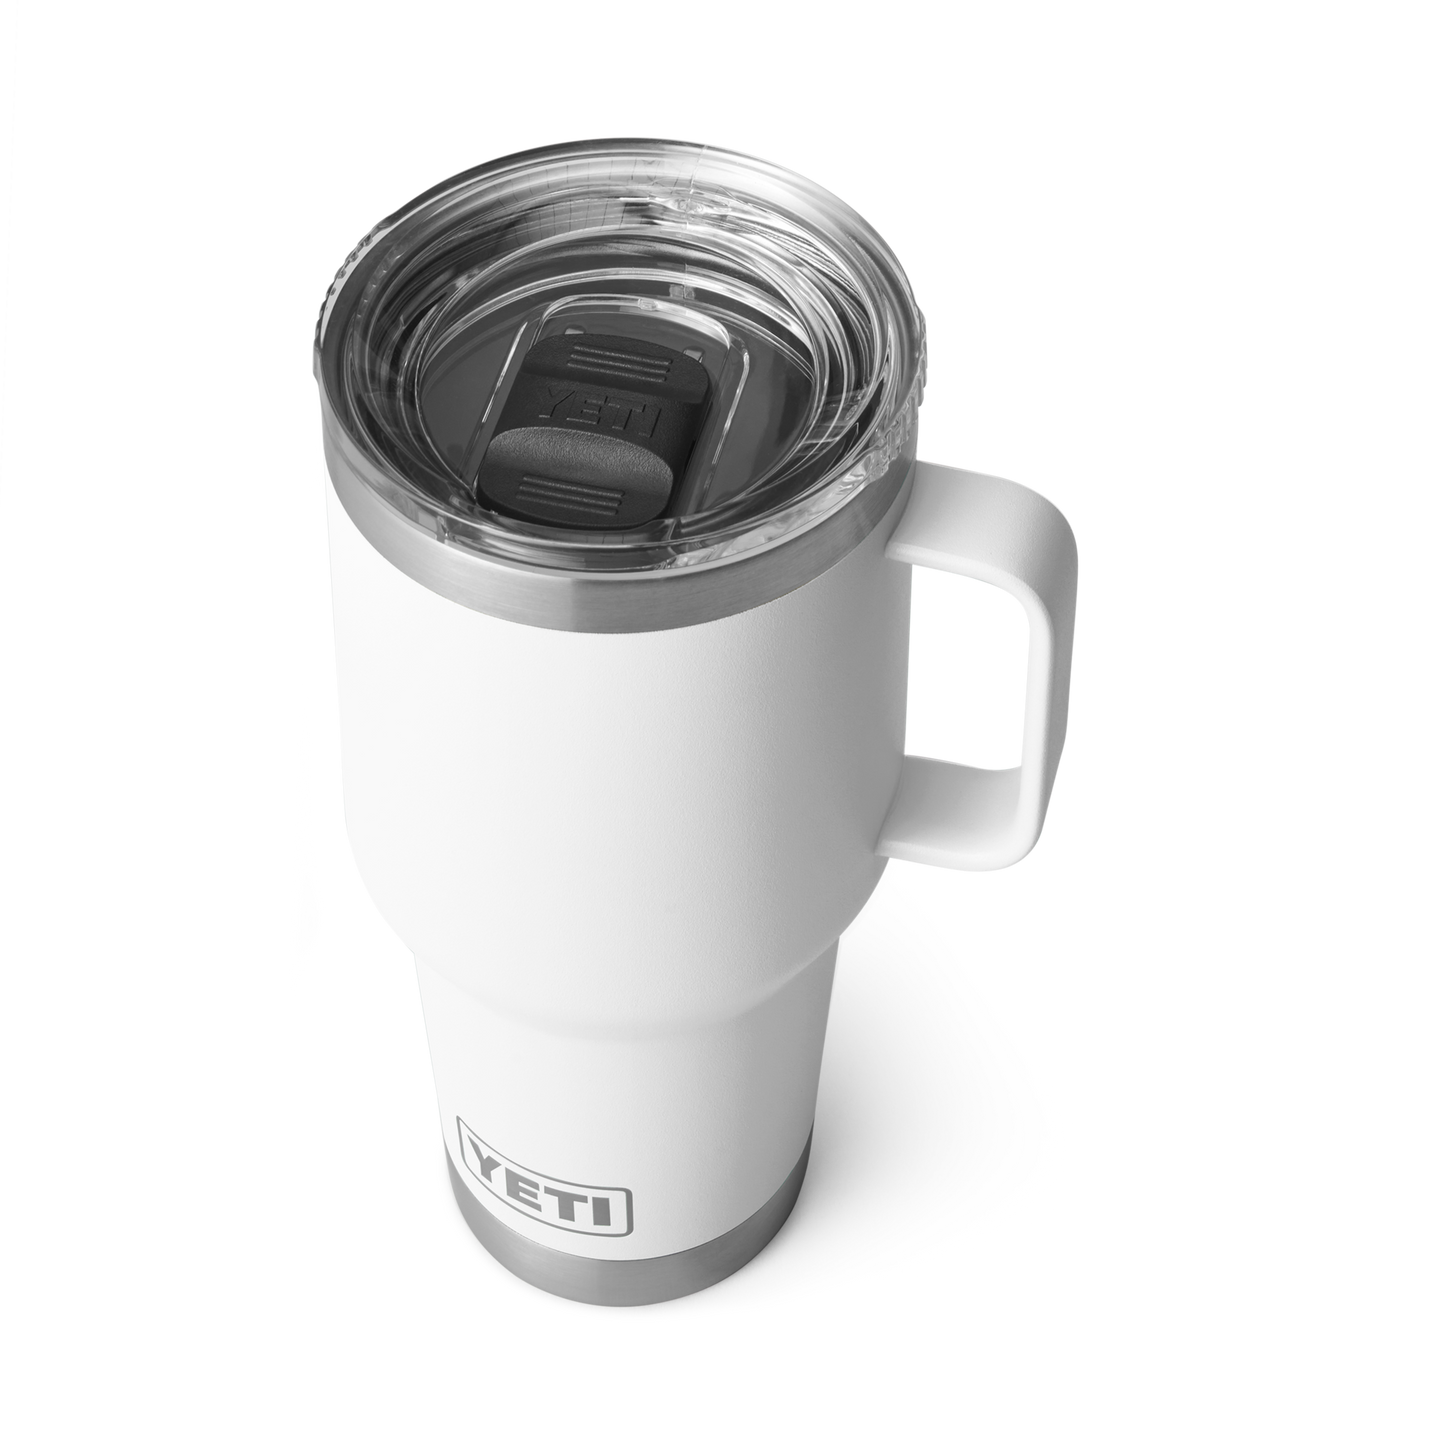 YETI Custom 30 oz Travel Mugs with Stronghold Lid, White